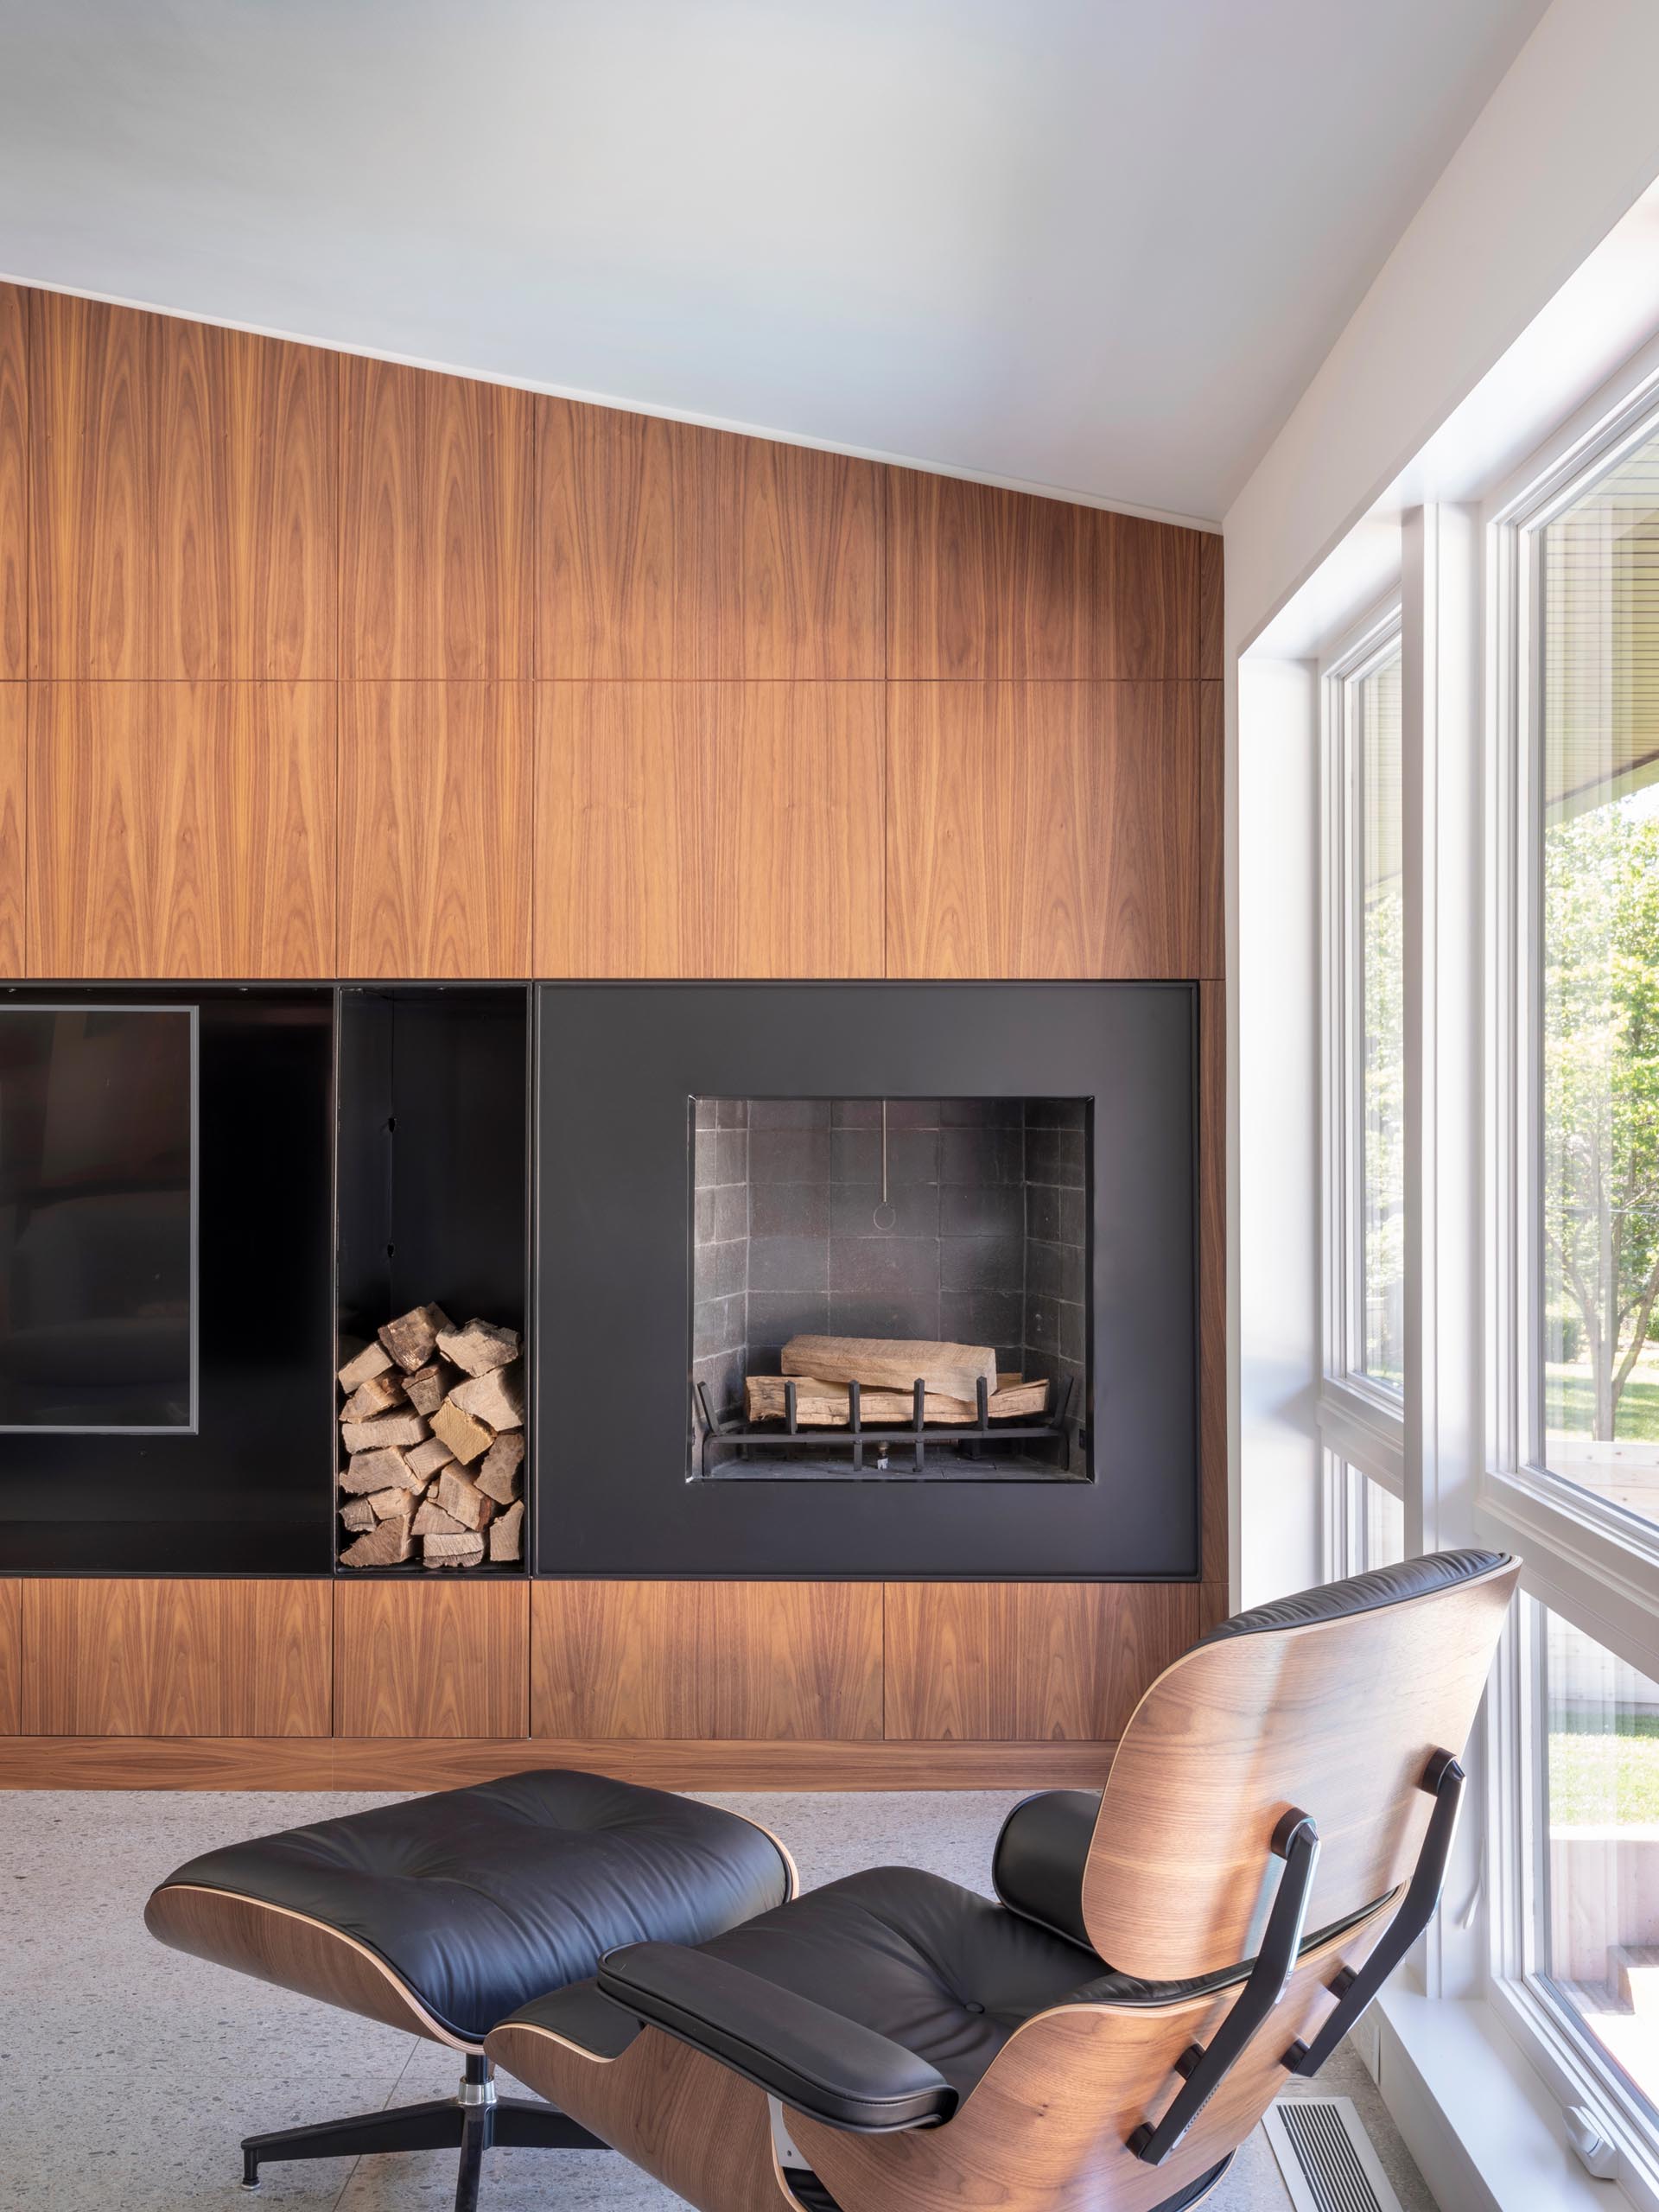 Современная гостиная с деревянной акцентной стеной, разделенной черной сталью, в которой есть телевизор и камин.